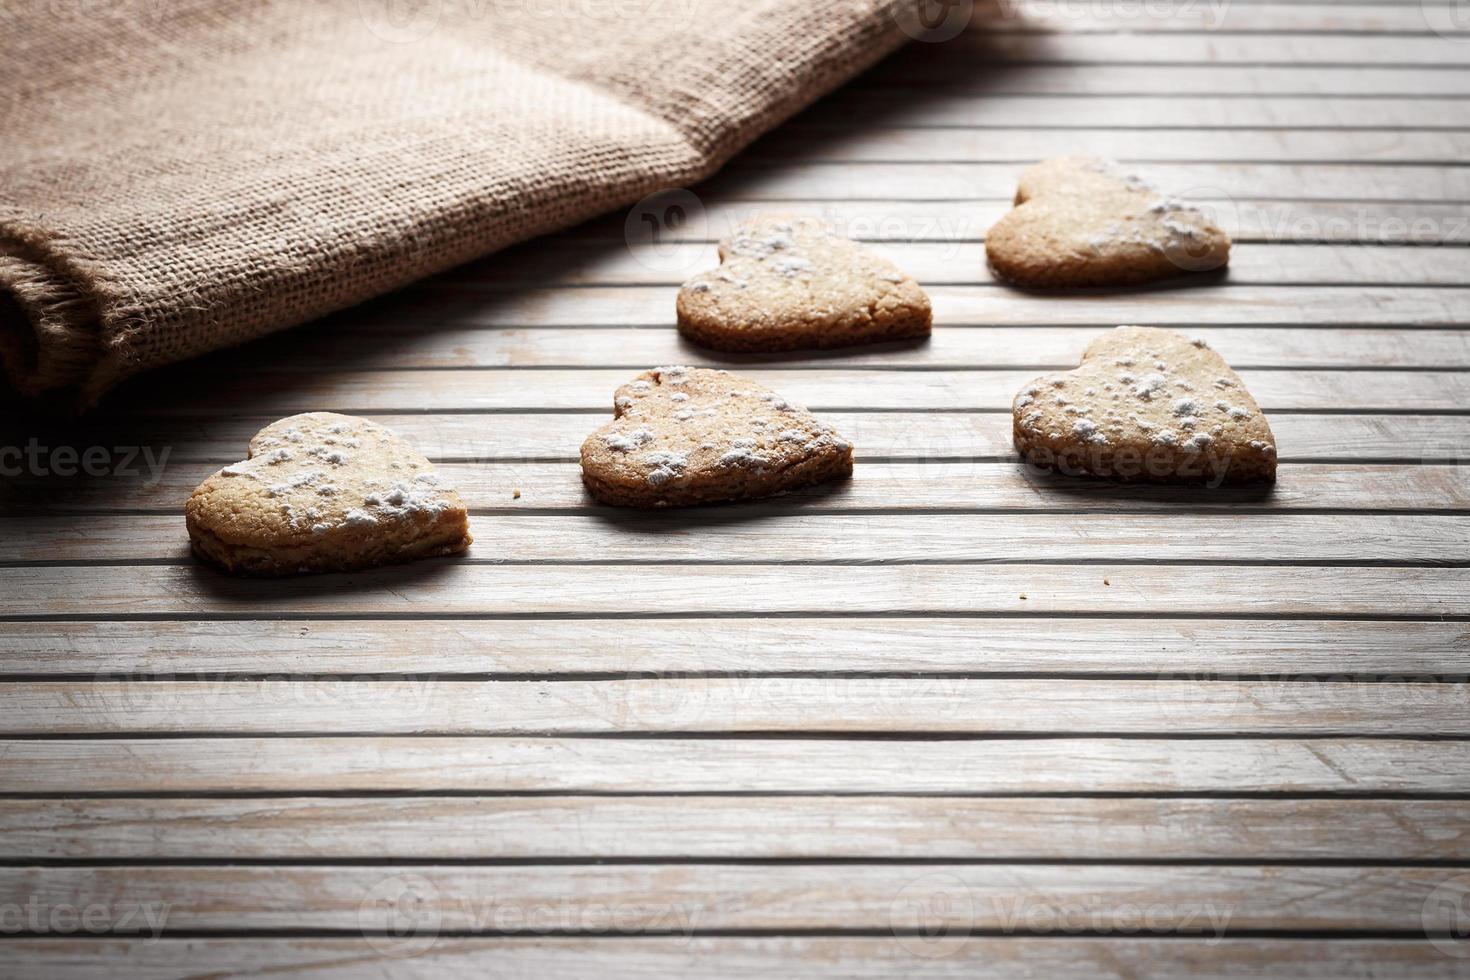 deliziosi biscotti fatti in casa a forma di cuore cosparsi di zucchero a velo su una tavola di legno con tela di sacco sullo sfondo. immagine orizzontale vista in controluce. foto